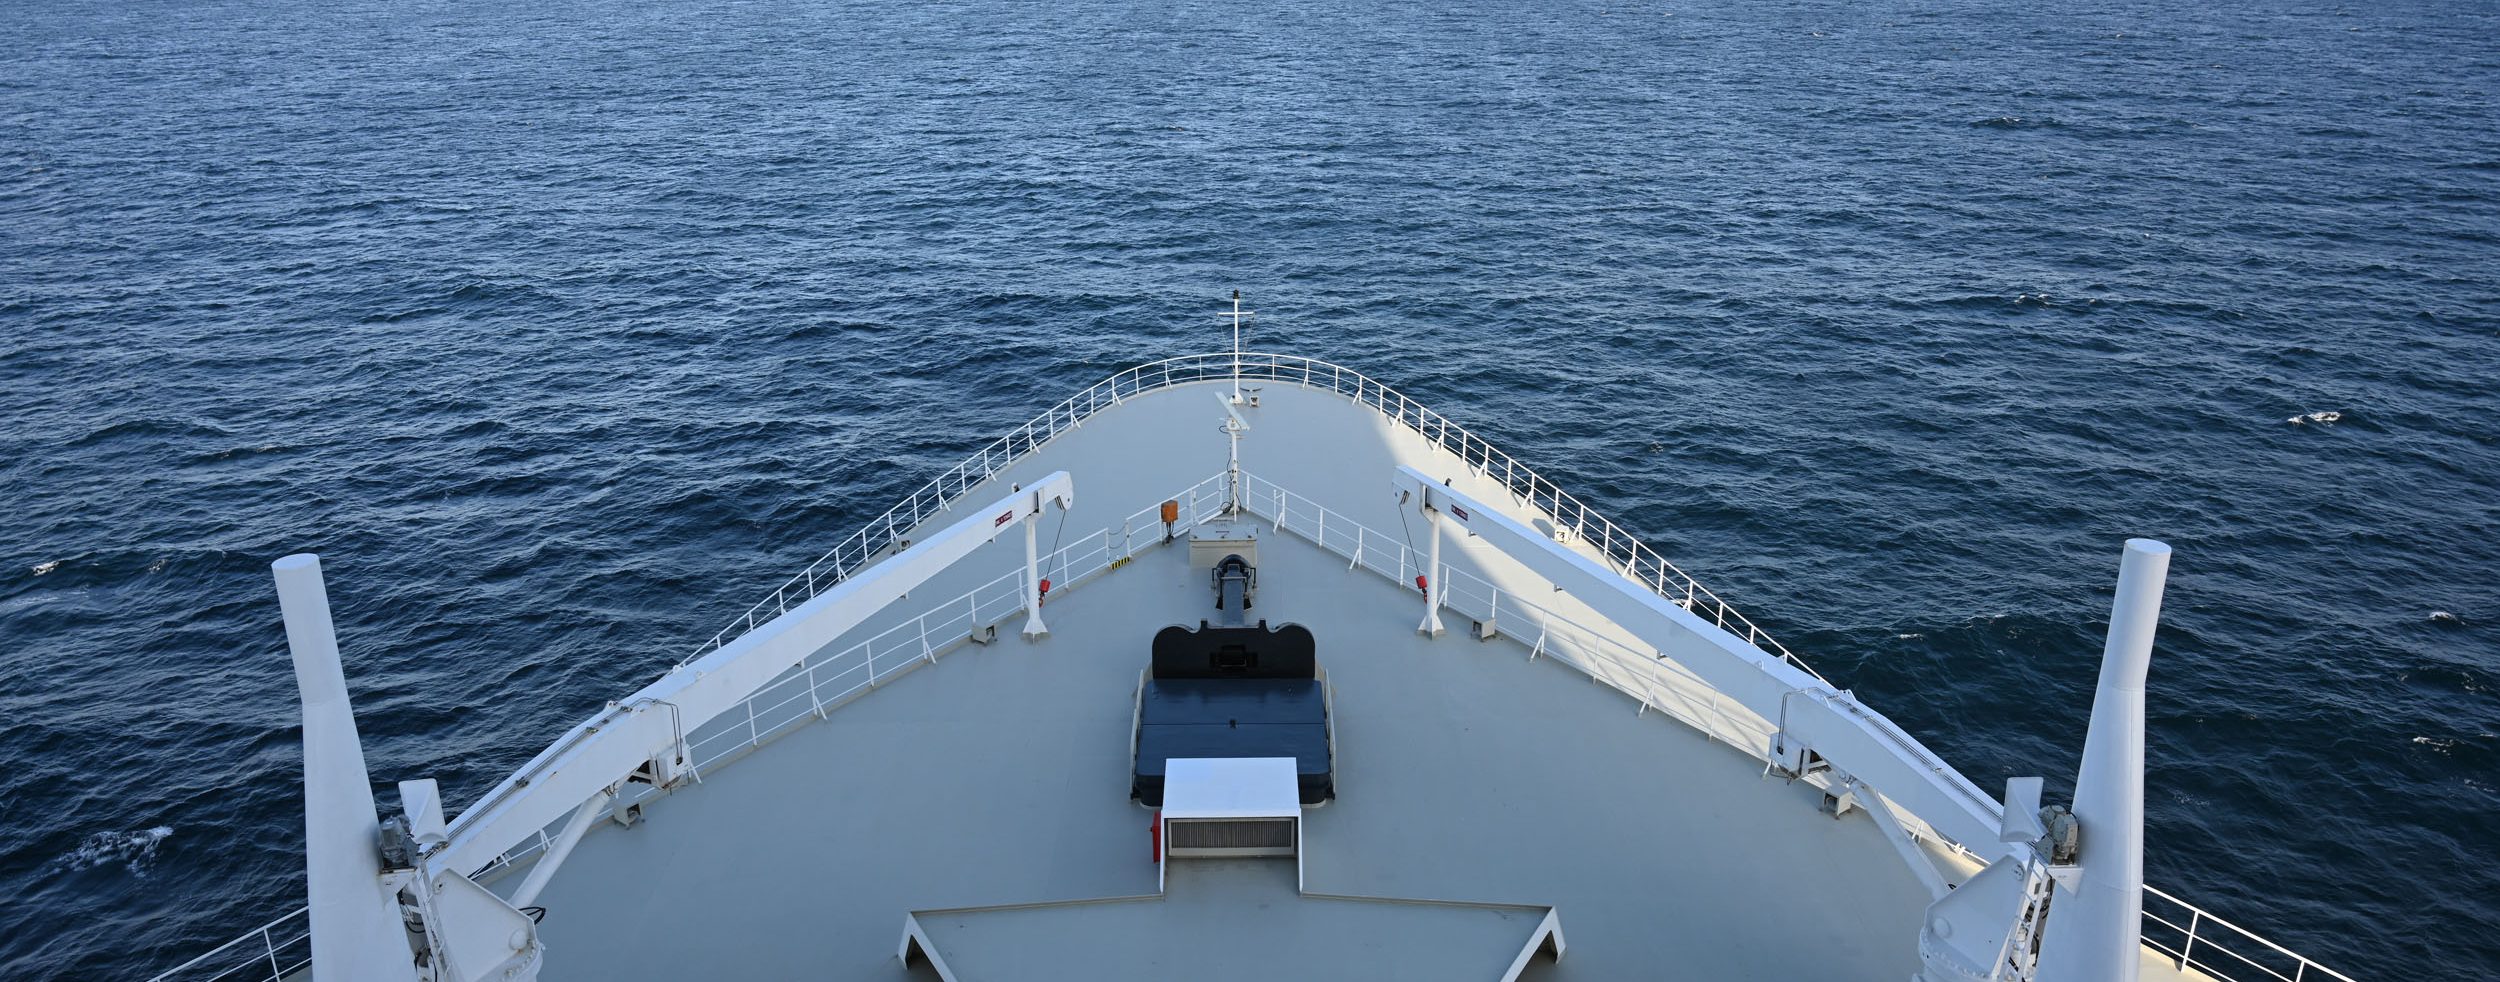 Reiseberichte über die Queens von Cunard - Die Weltenbummler